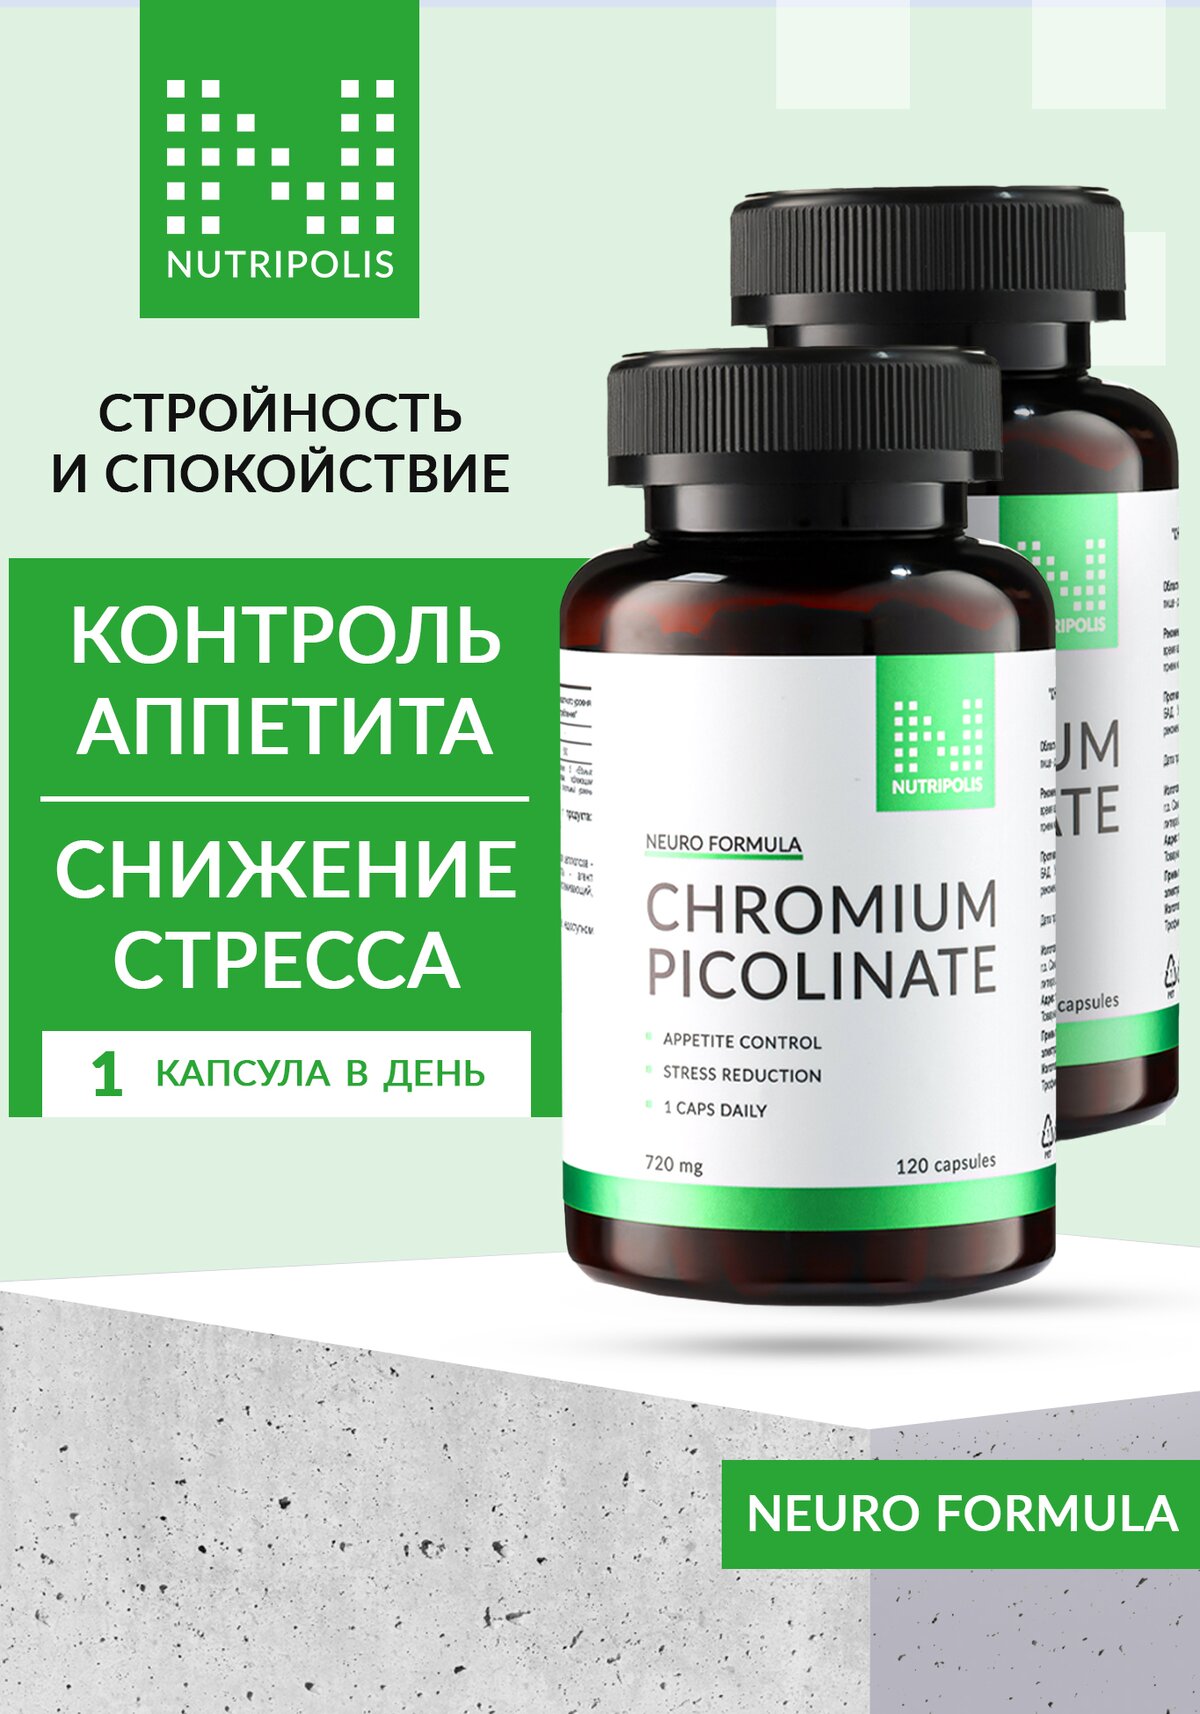 "Хрома пиколинат", 2 шт. купить недорого в интернет-магазине Leomax.ru